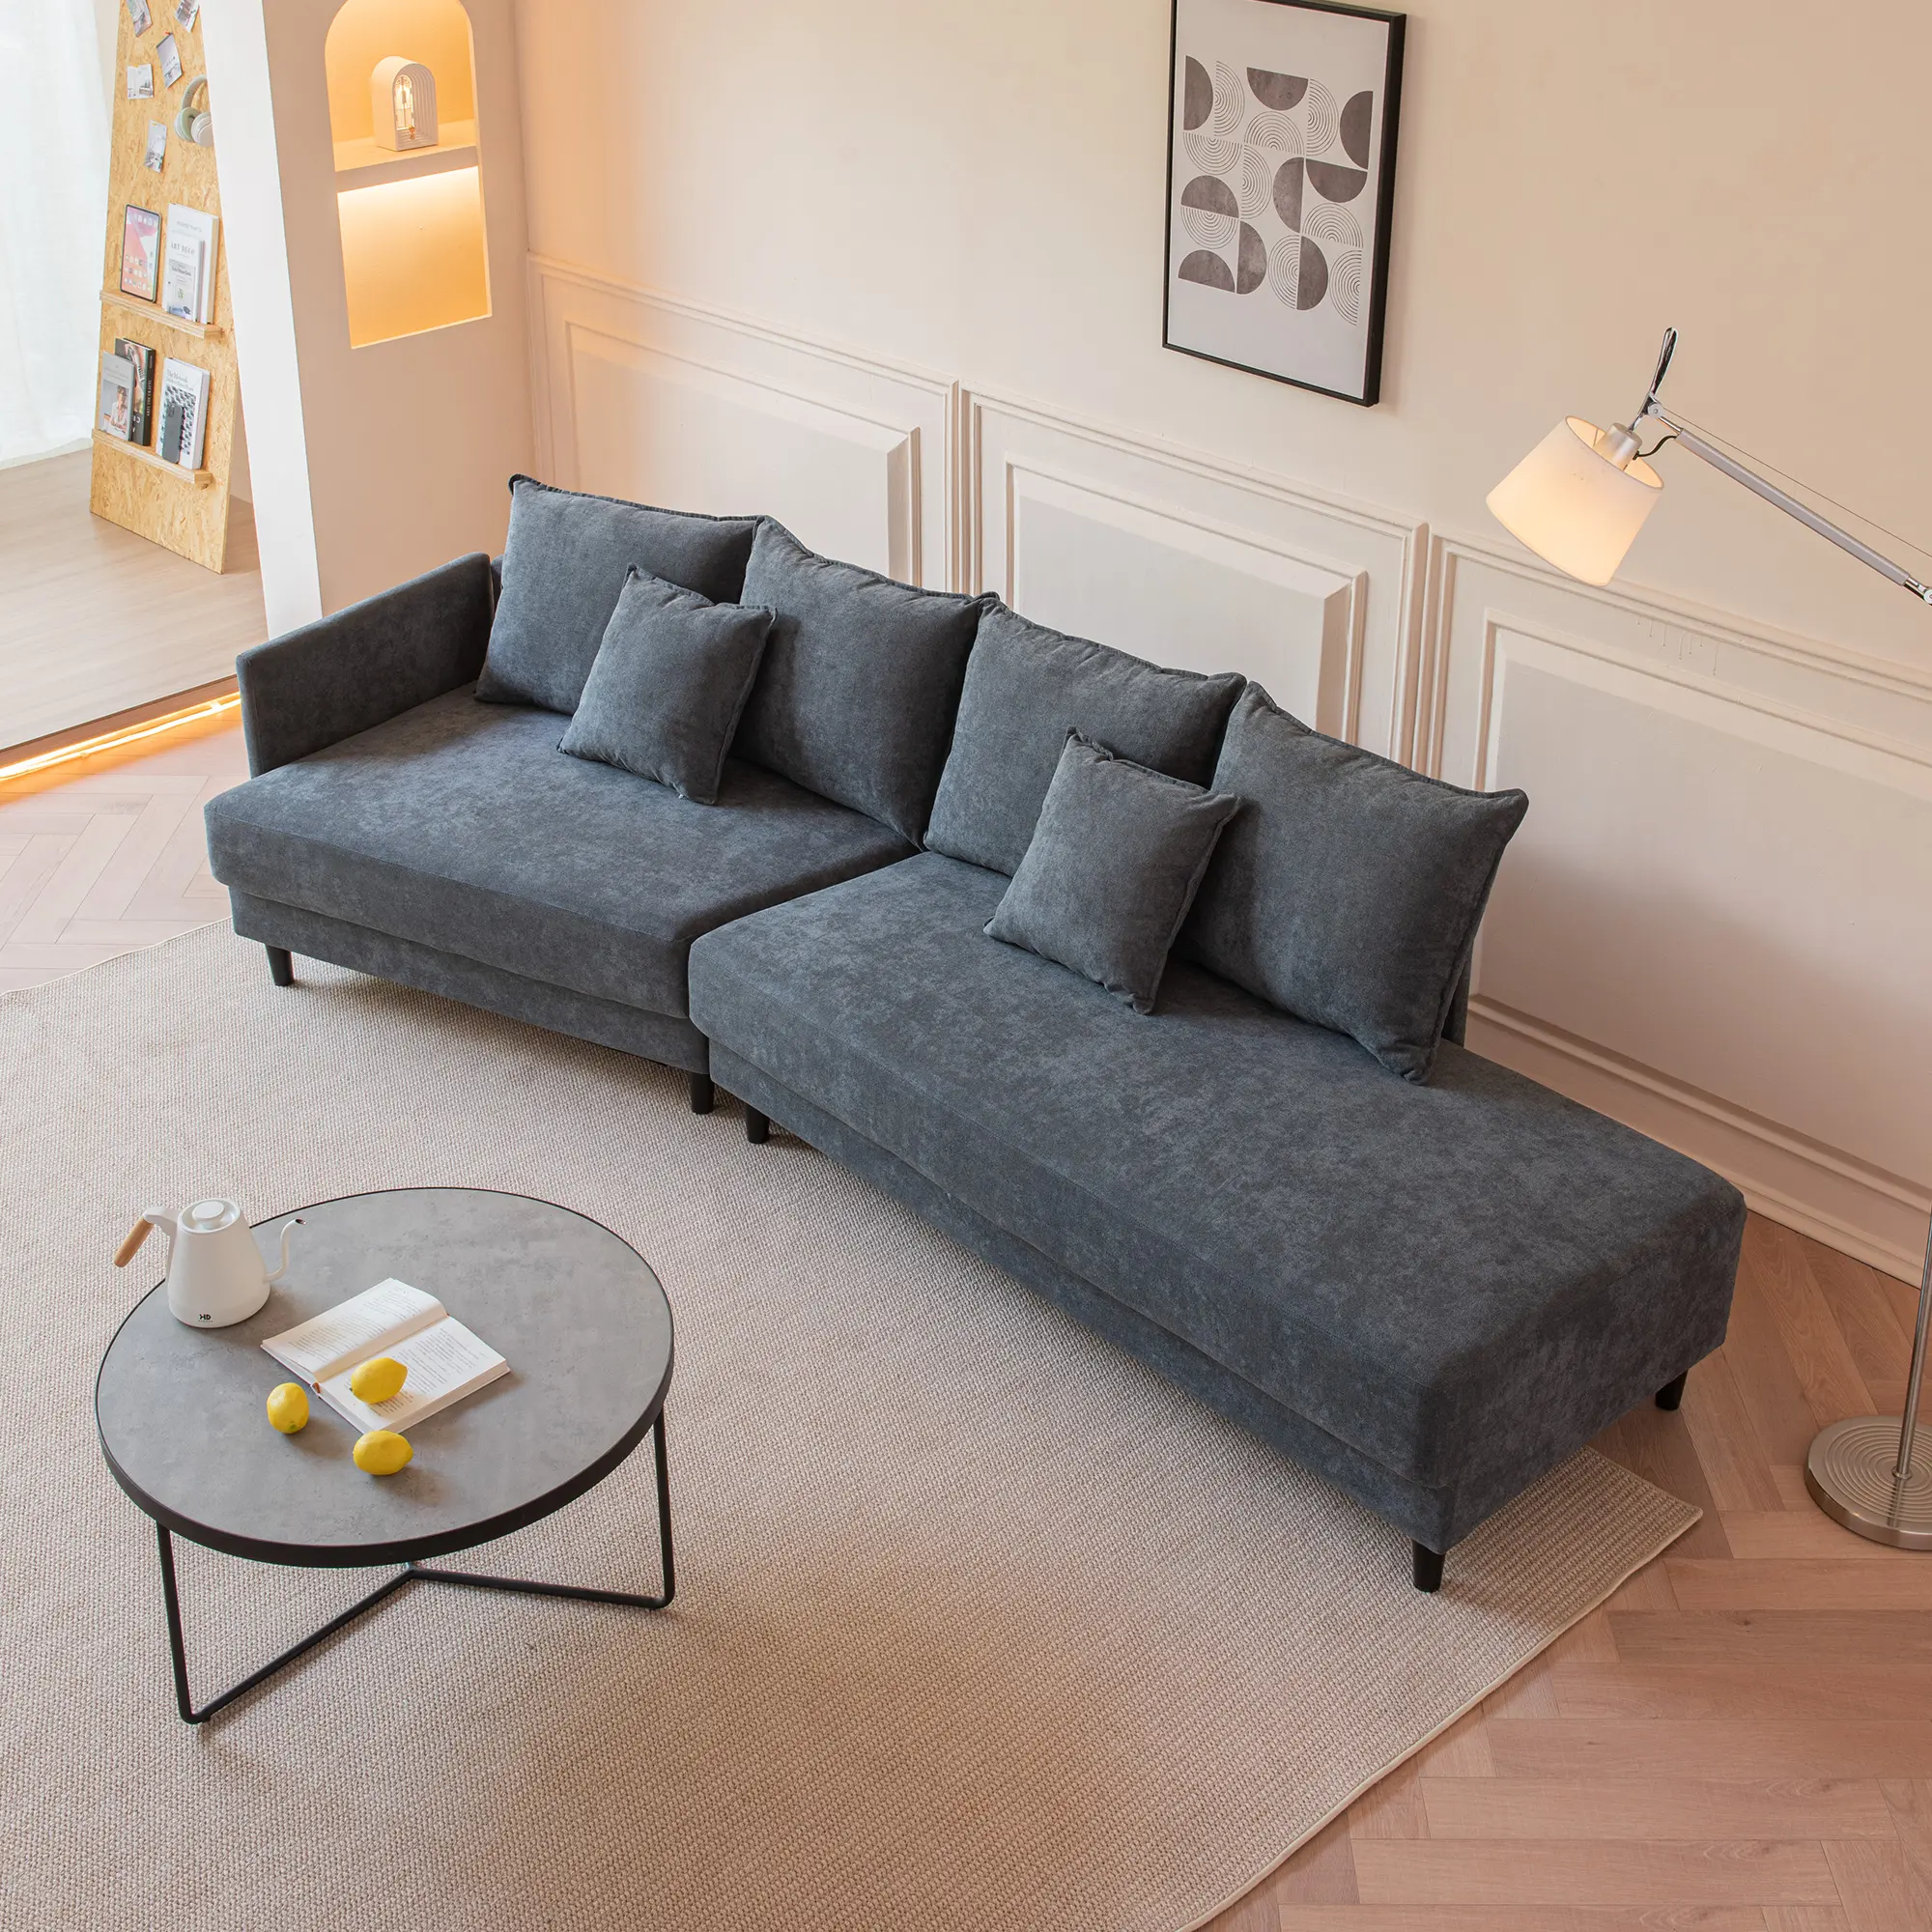 Dunkelgrau Stromlinien förmiges Stoffs ofa Moderne Designs Schnitte Luxus Wohnzimmer möbel Polyester Stoff Sofa Set Möbel